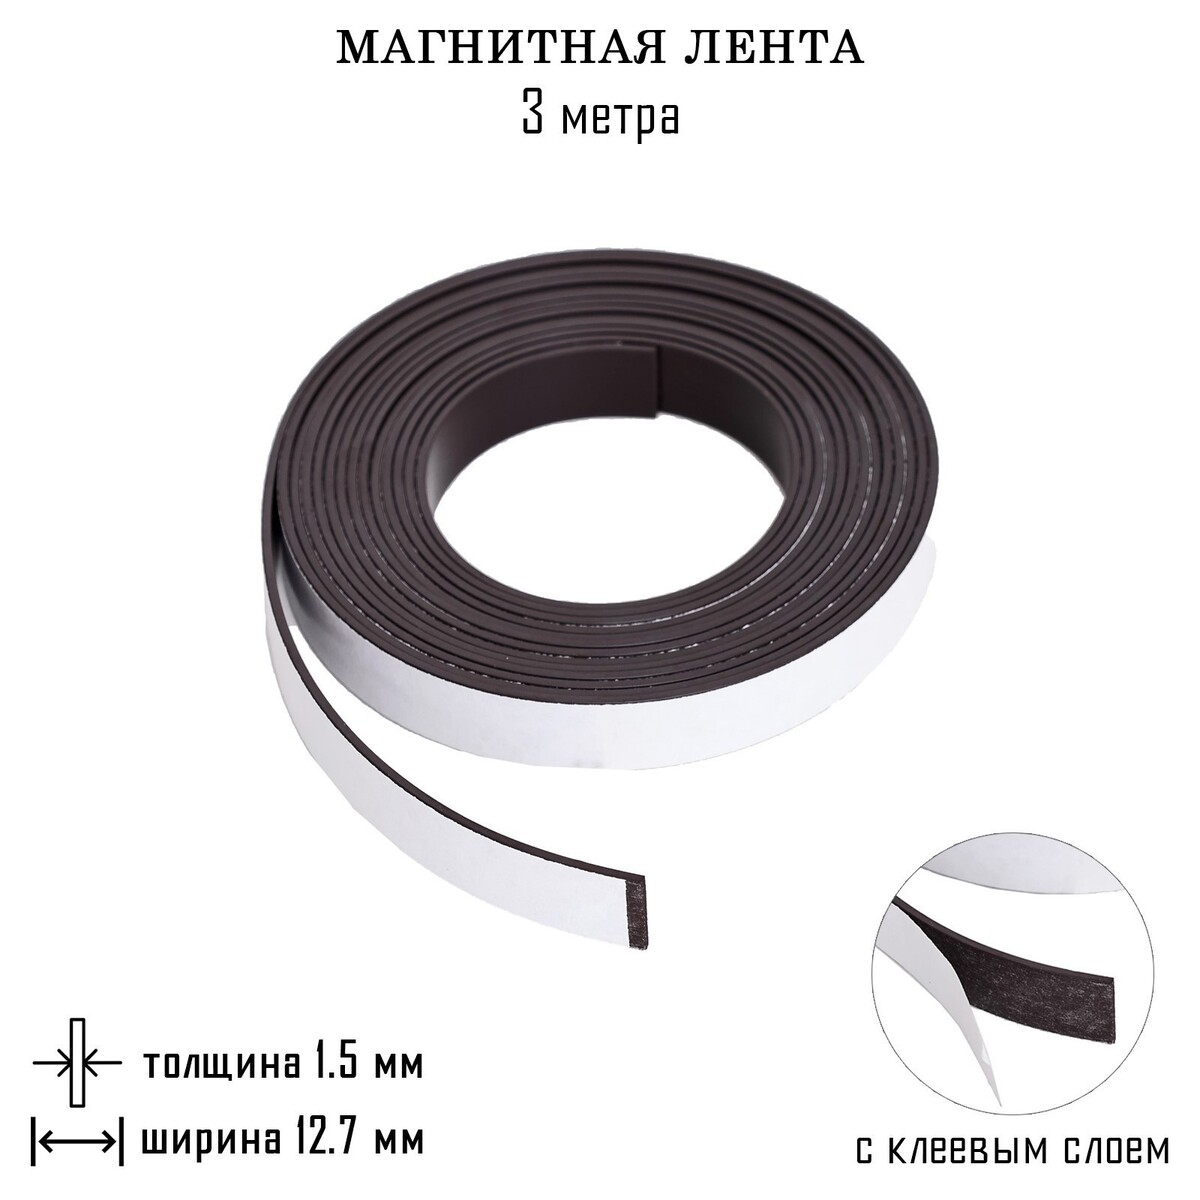 Магнитная лента, с клеевым слоем, 3 метра, толщина 1.5 мм, ширина 12.7 мм светодиодная лента для воздушного шара гирлянда 3 метра 31 диод ная